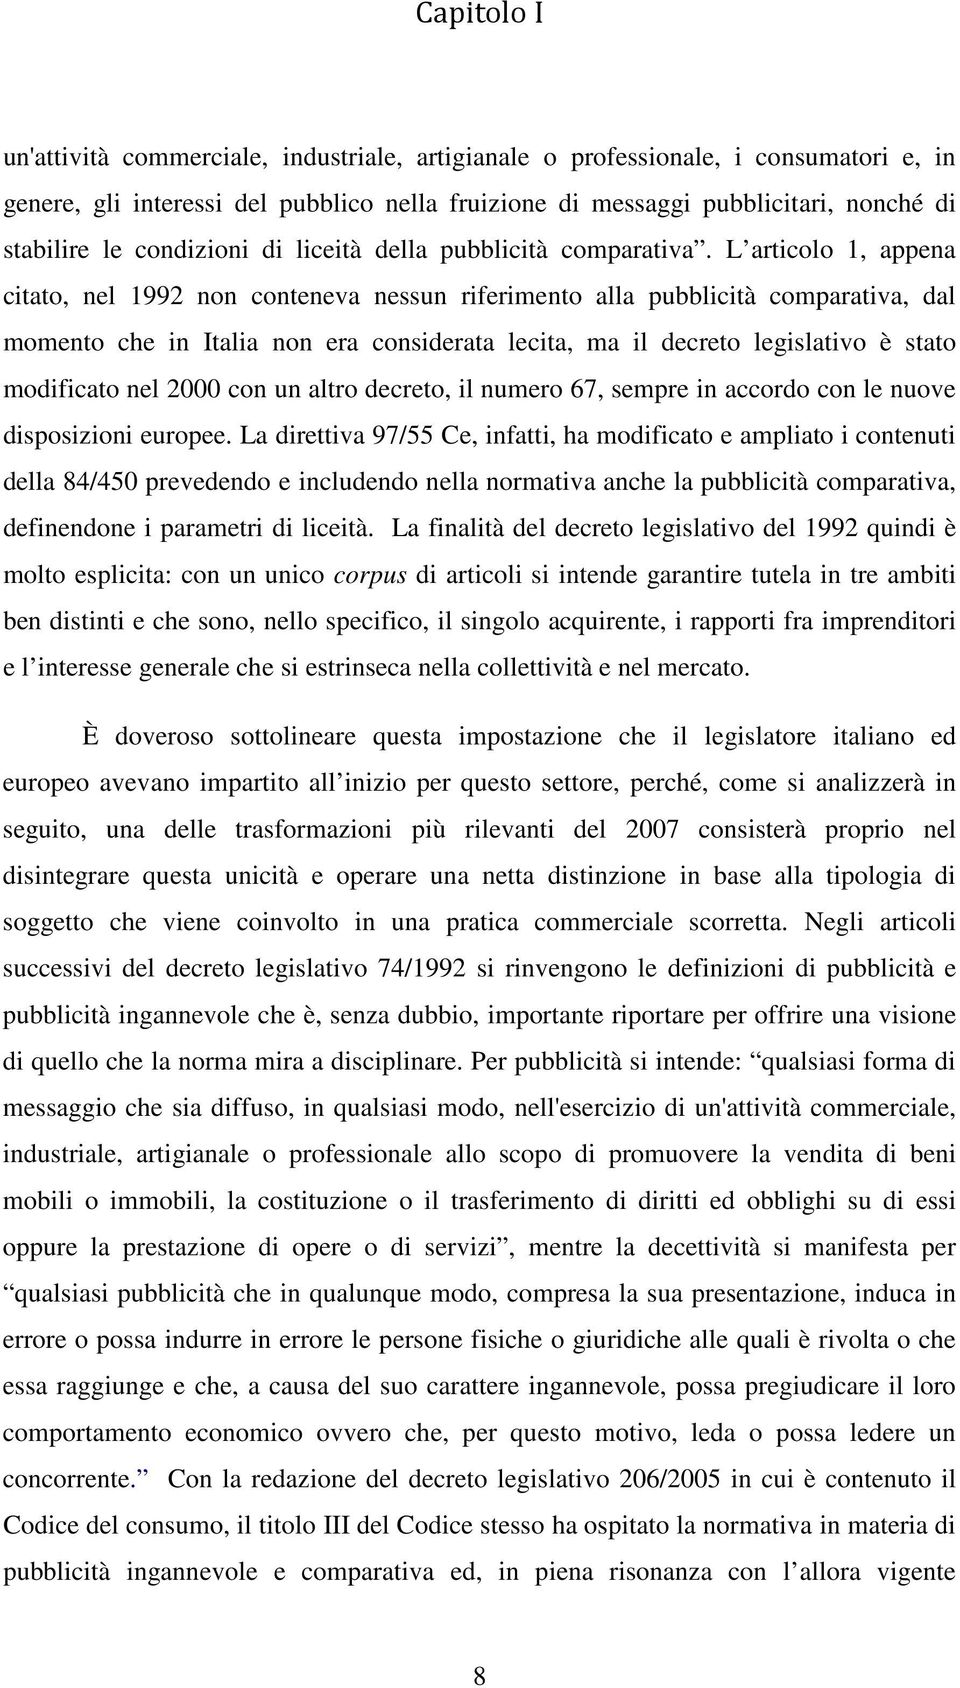 L articolo 1, appena citato, nel 1992 non conteneva nessun riferimento alla pubblicità comparativa, dal momento che in Italia non era considerata lecita, ma il decreto legislativo è stato modificato